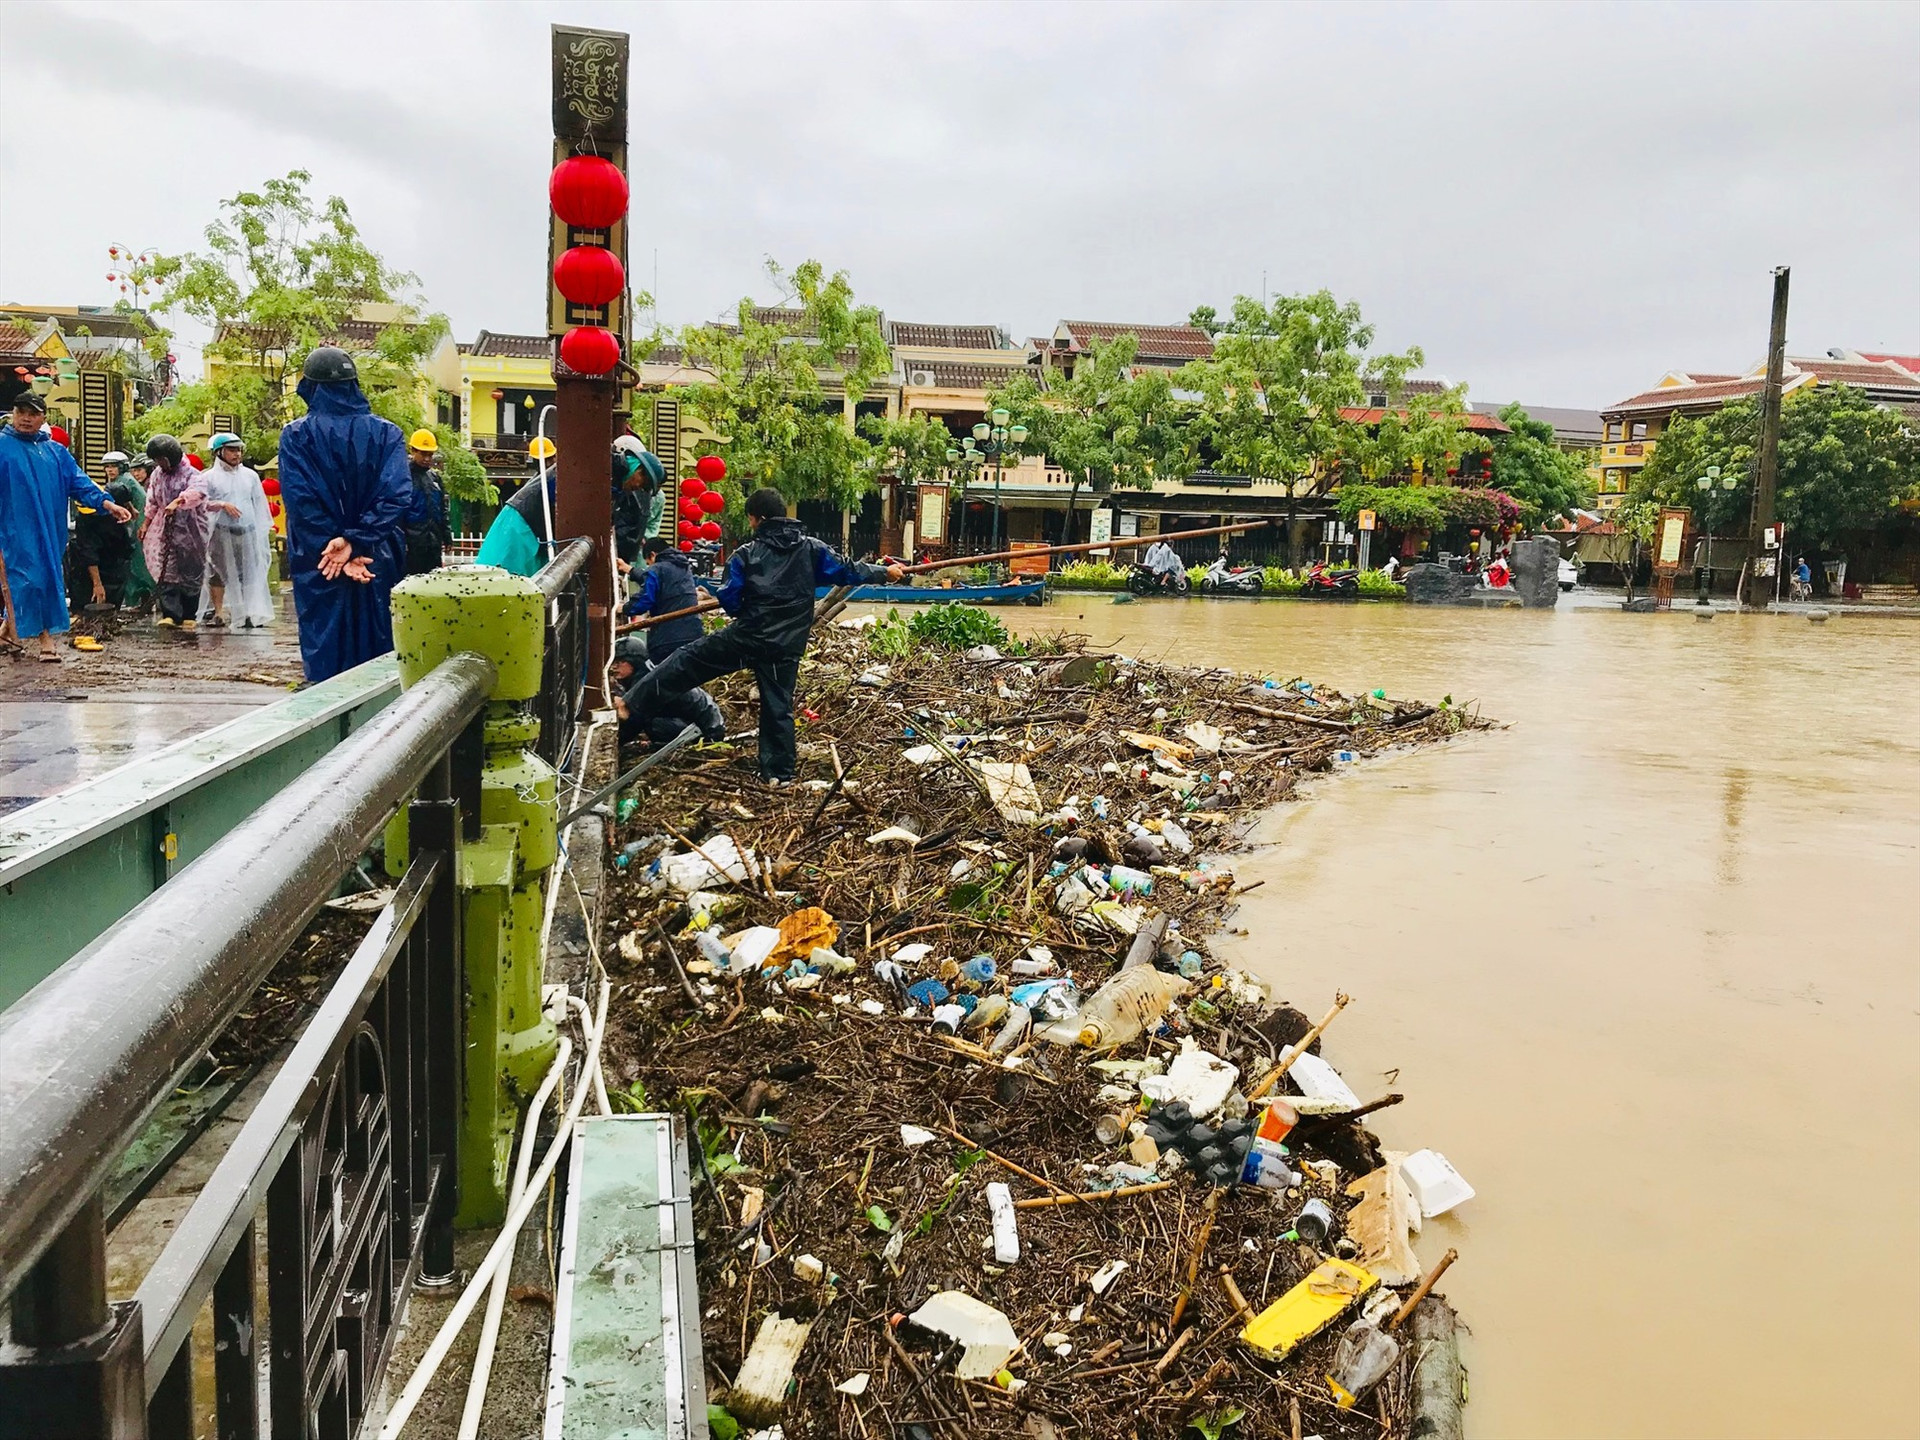 Nước lũ mang theo một lượng lớn rác thải làm tắc nghẽn dòng chảy sông Hoài tại khu vực cầu An Hội. Ảnh: Q.T